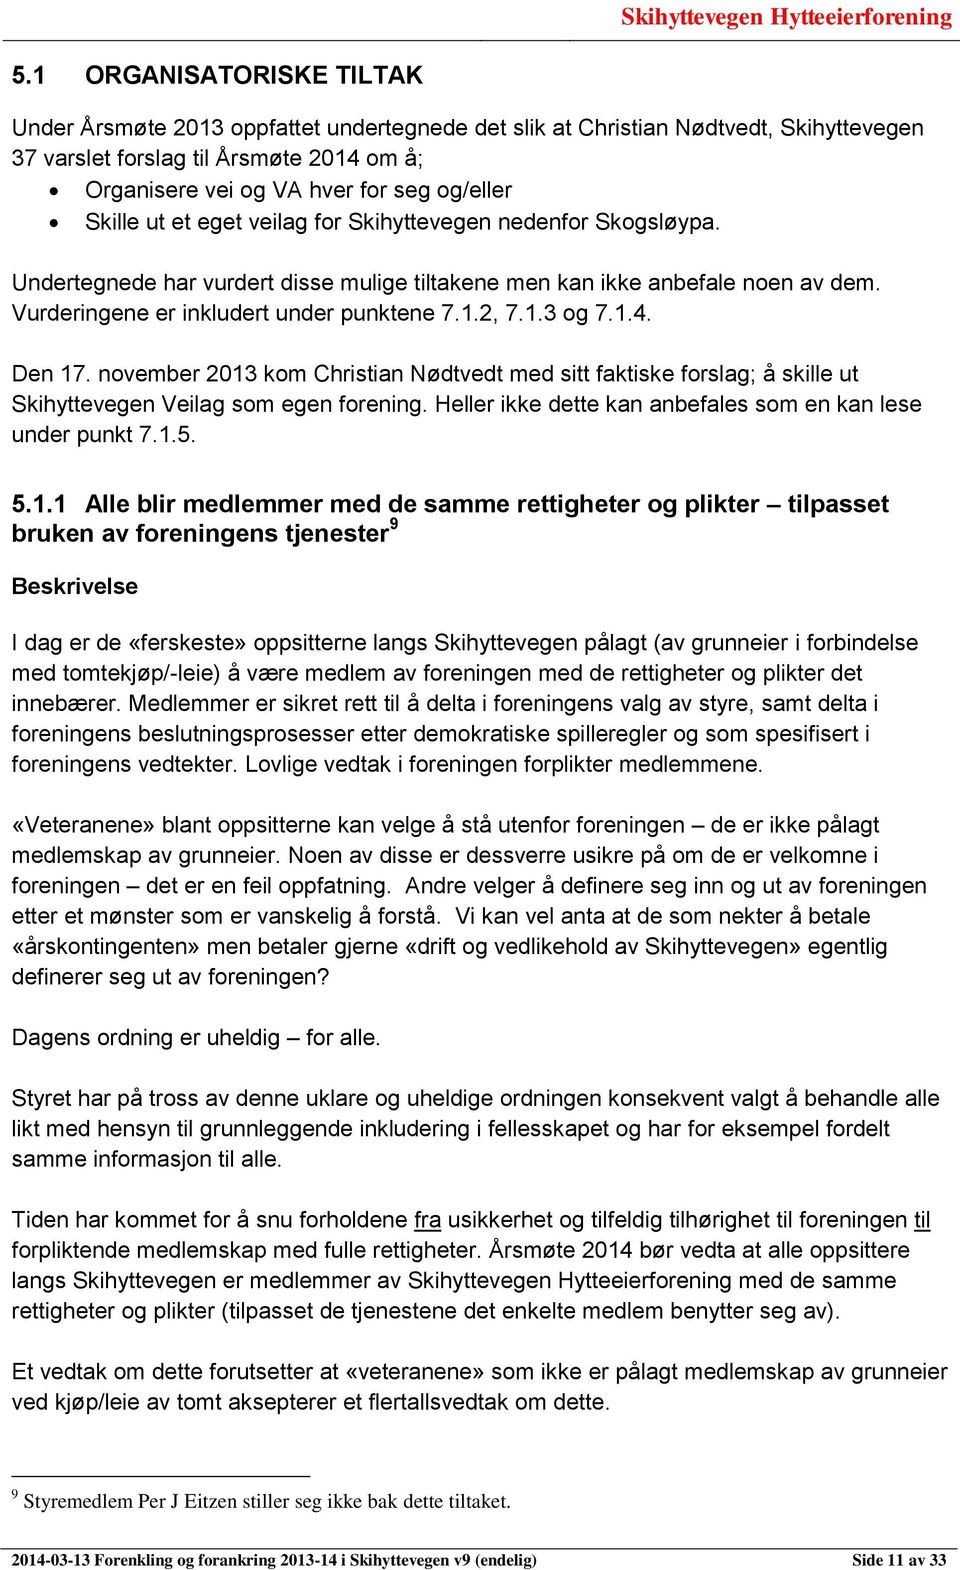 1.4. Den 17. november 2013 kom Christian Nødtvedt med sitt faktiske forslag; å skille ut Skihyttevegen Veilag som egen forening. Heller ikke dette kan anbefales som en kan lese under punkt 7.1.5.